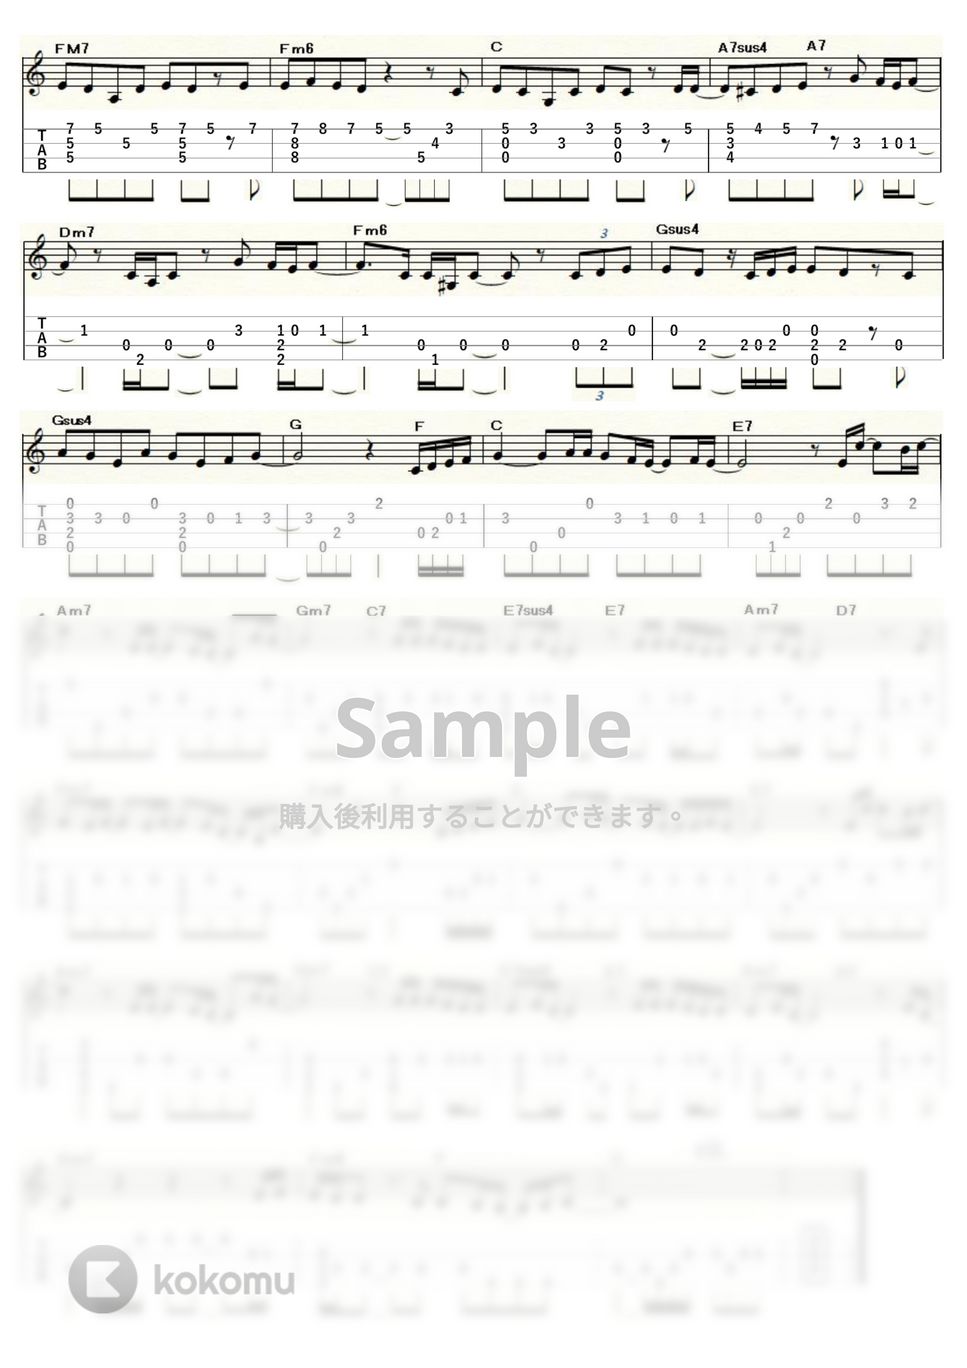 いきものがかり - ありがとう (ｳｸﾚﾚｿﾛ/Low-G/中級) by ukulelepapa